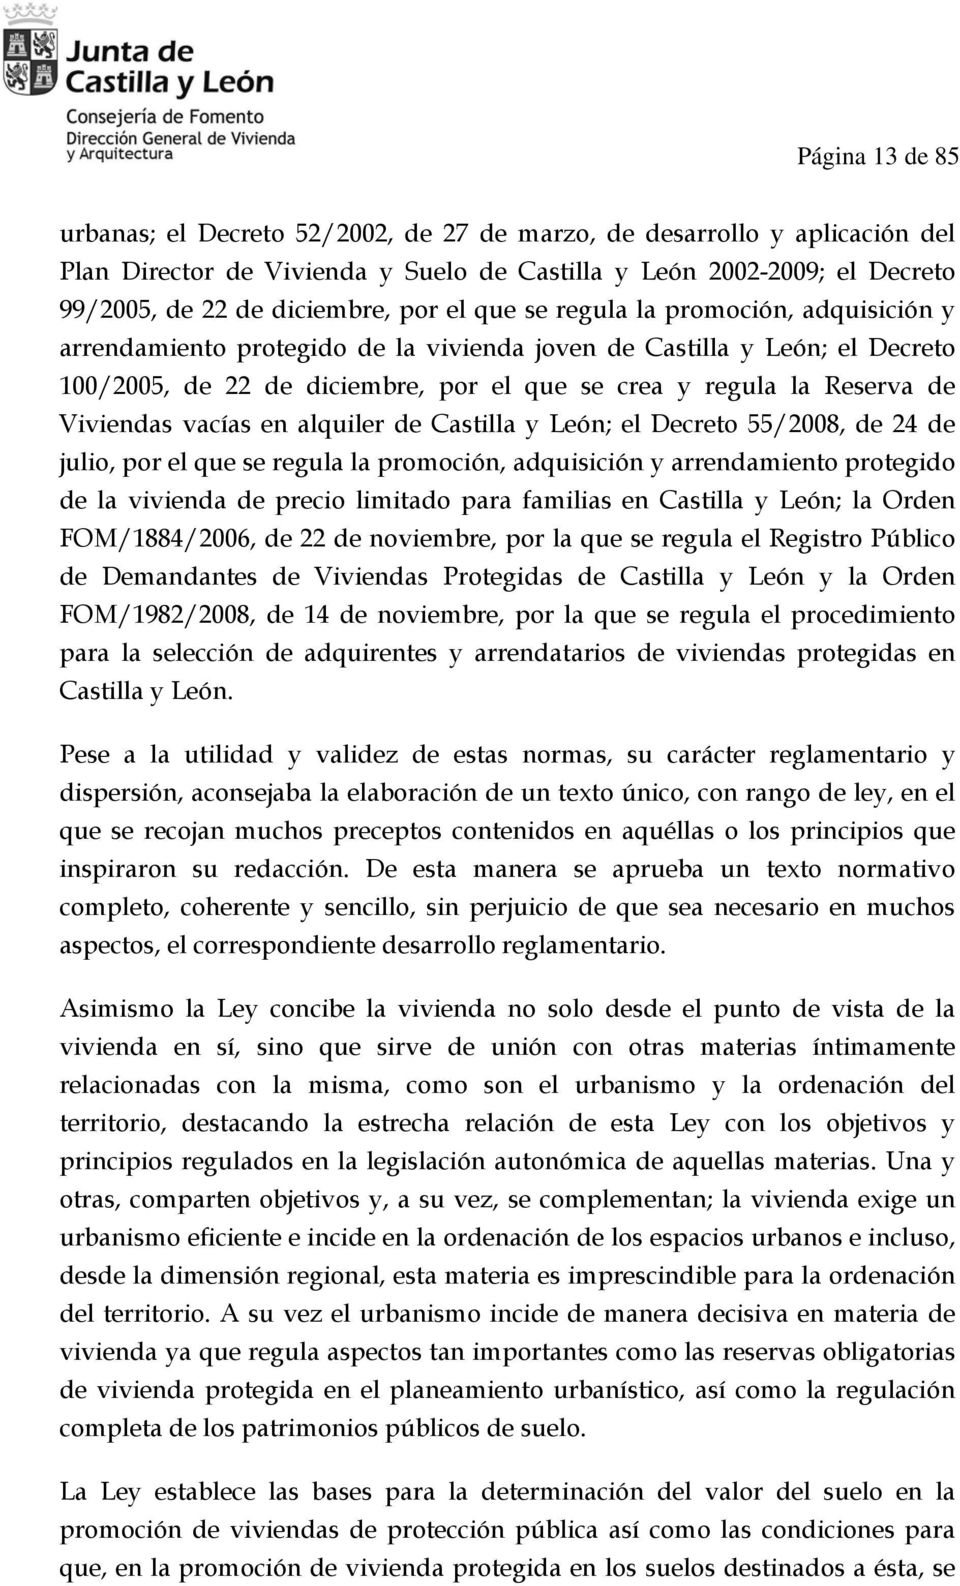 Viviendas vacías en alquiler de Castilla y León; el Decreto 55/2008, de 24 de julio, por el que se regula la promoción, adquisición y arrendamiento protegido de la vivienda de precio limitado para